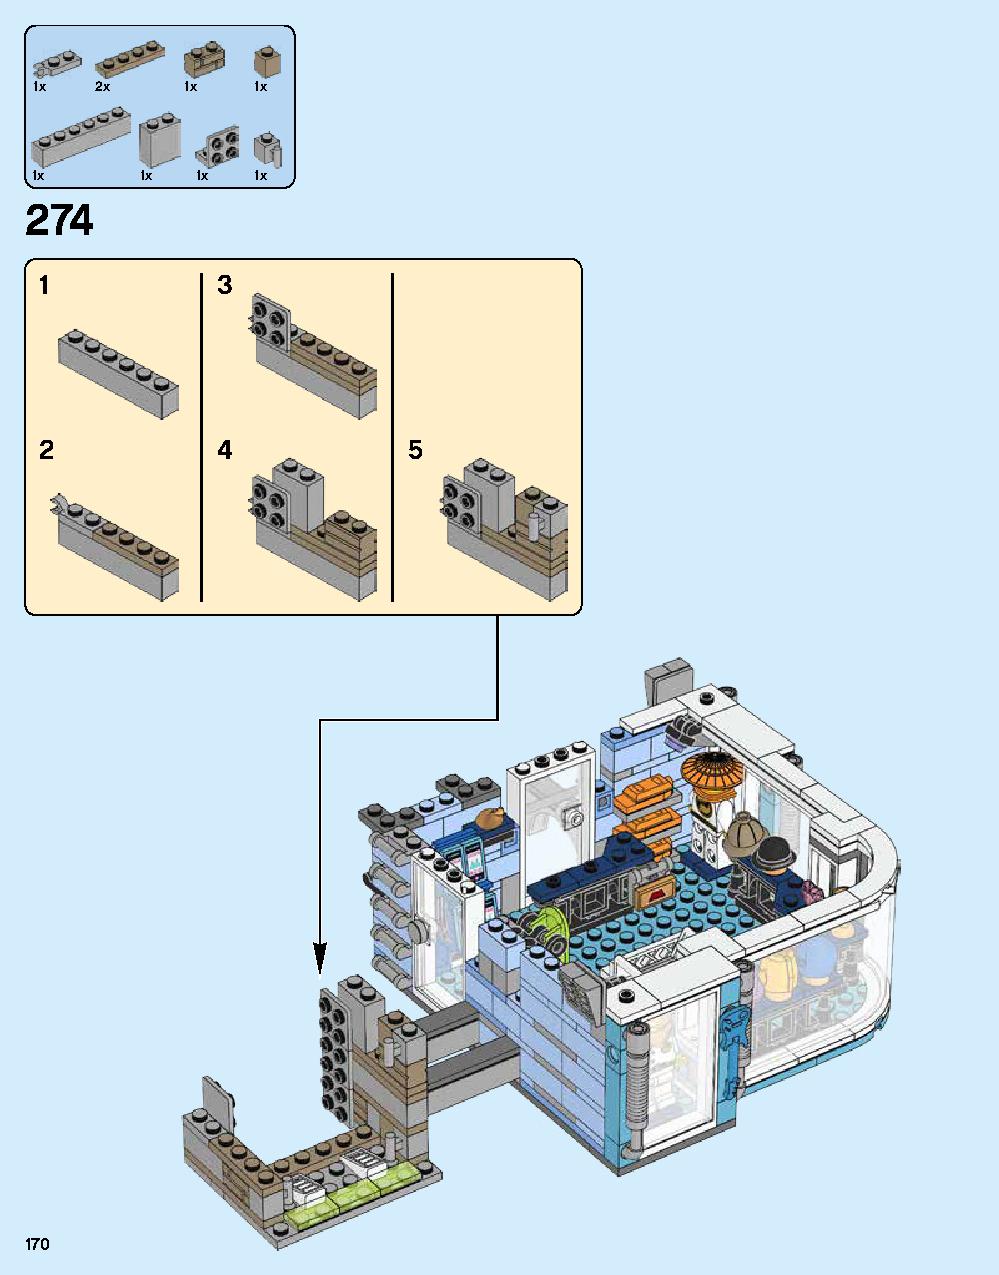 ニンジャゴー シティ 70620 レゴの商品情報 レゴの説明書・組立方法 170 page